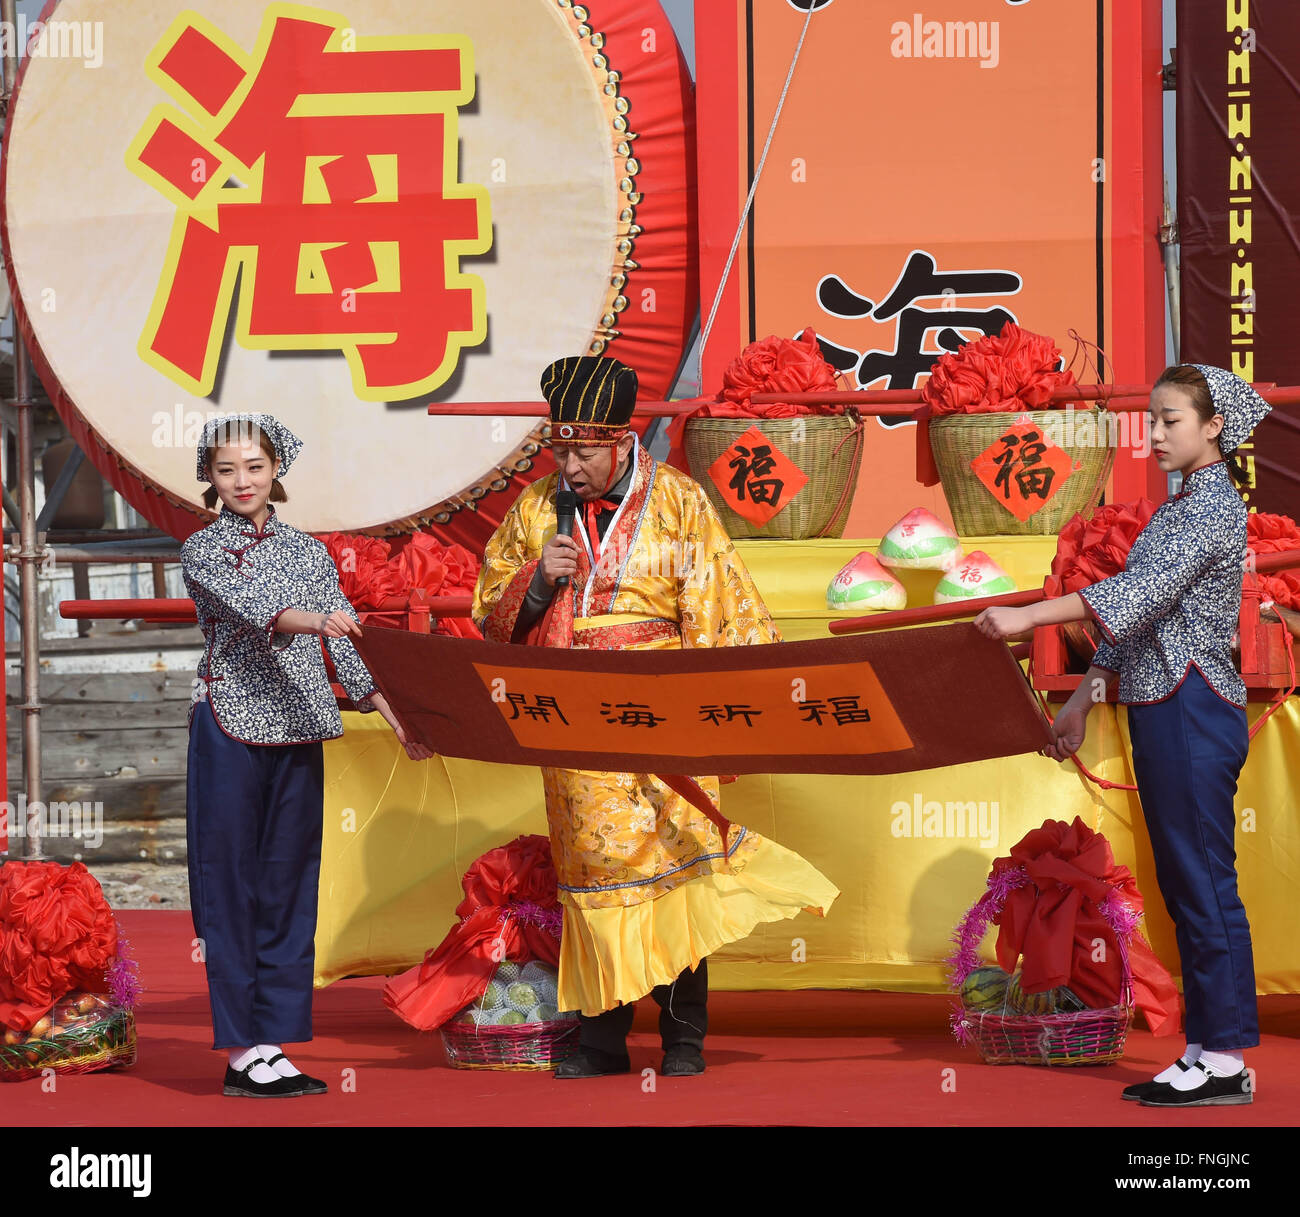 Panjin, province de Liaoning en Chine. Mar 15, 2016. Un hôte traite du rituel pour la pêche dans Erjiegou Ville de Zhenjiang City, Liaoning Province du nord-est de la Chine, le 15 mars 2016. Erjiegou, l'intersection où l'océan rencontre la rivière, est le lieu de recueillir pour les pêcheurs. Le rituel qui a eu lieu il y a une cérémonie traditionnelle au cours de laquelle les pêcheurs priez pour la sécurité et la récolte. © Li Gang/Xinhua/Alamy Live News Banque D'Images